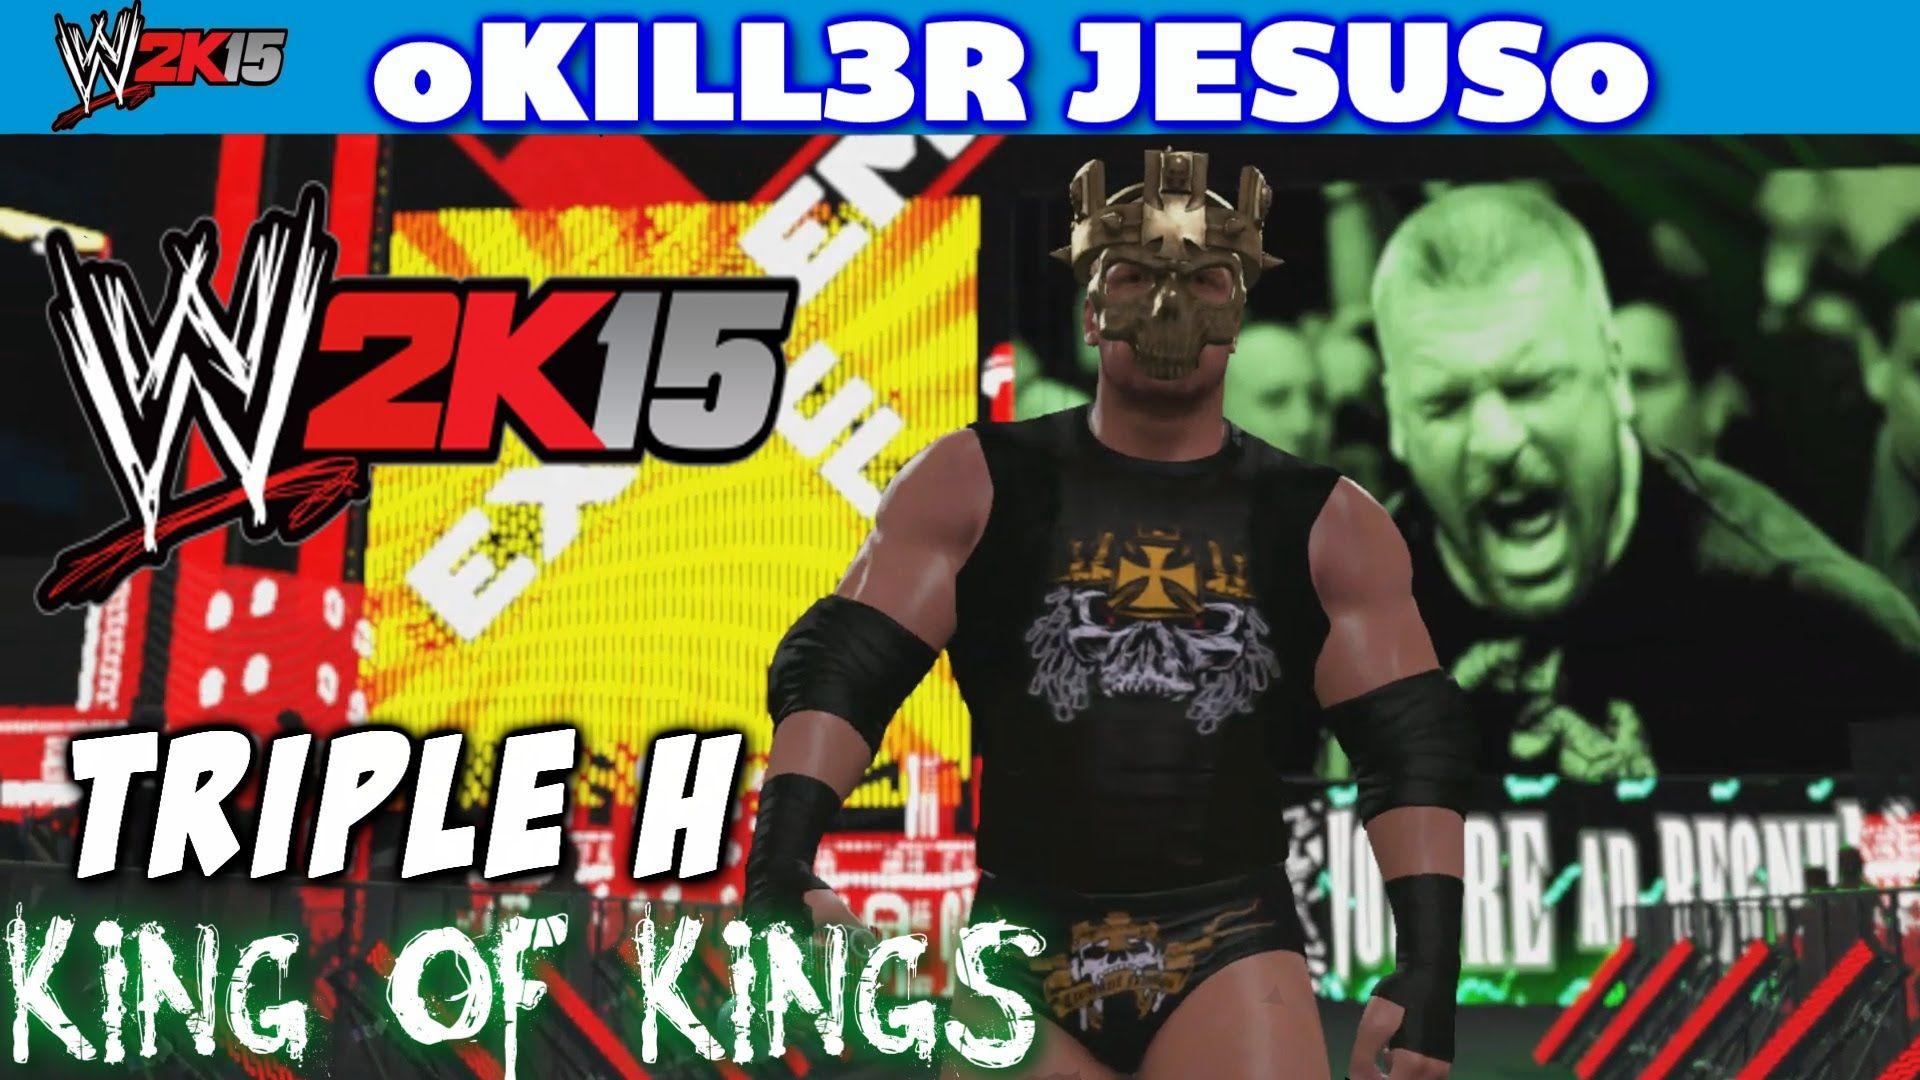 WWE 2K15 Triple H of Kings Skull King Mask I Community